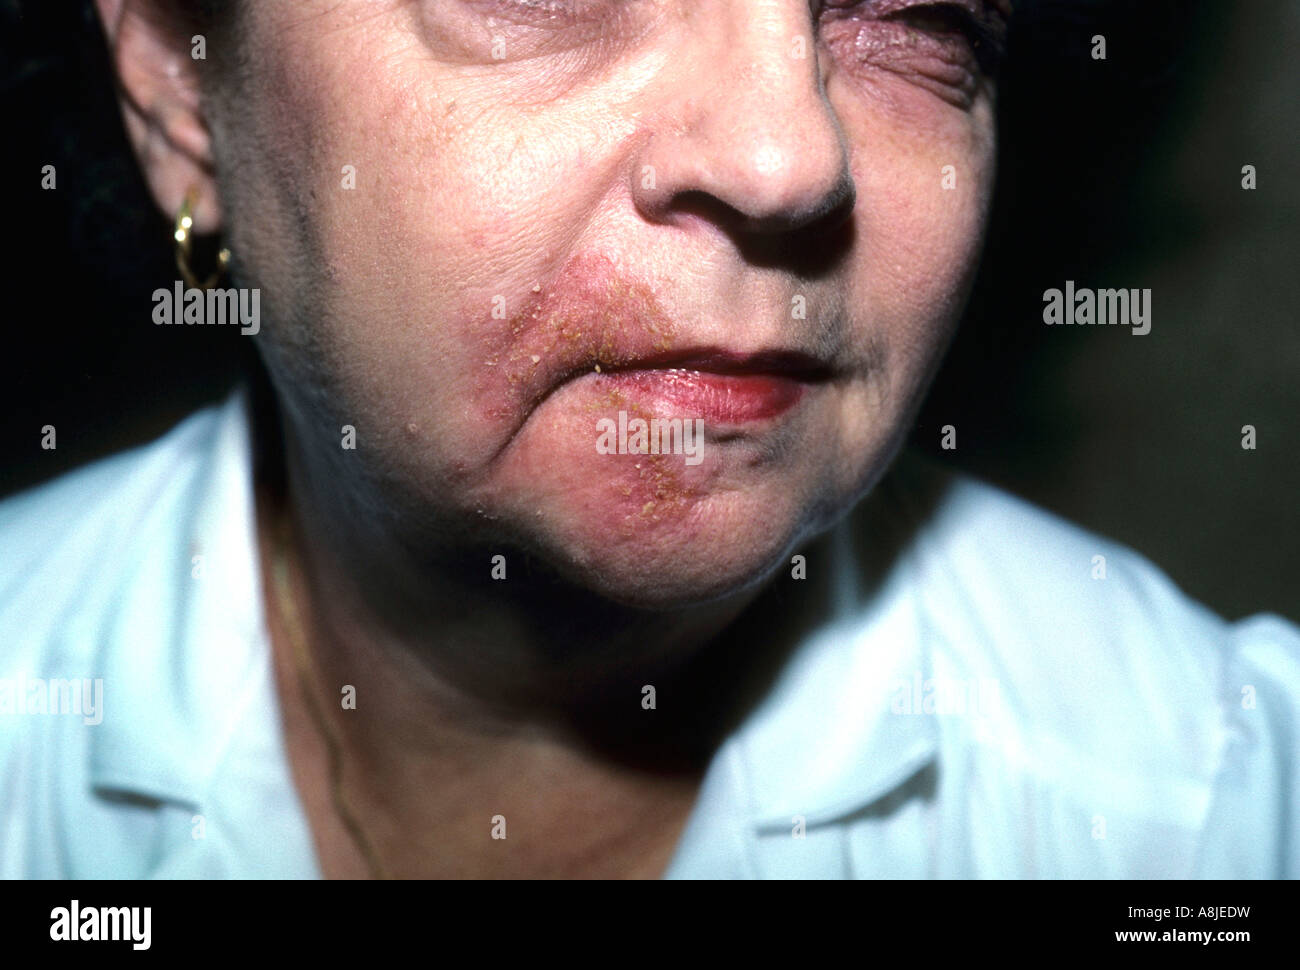 La dermatite da contatto sul viso del paziente a causa di una reazione allergica a cosmetici. Foto Stock